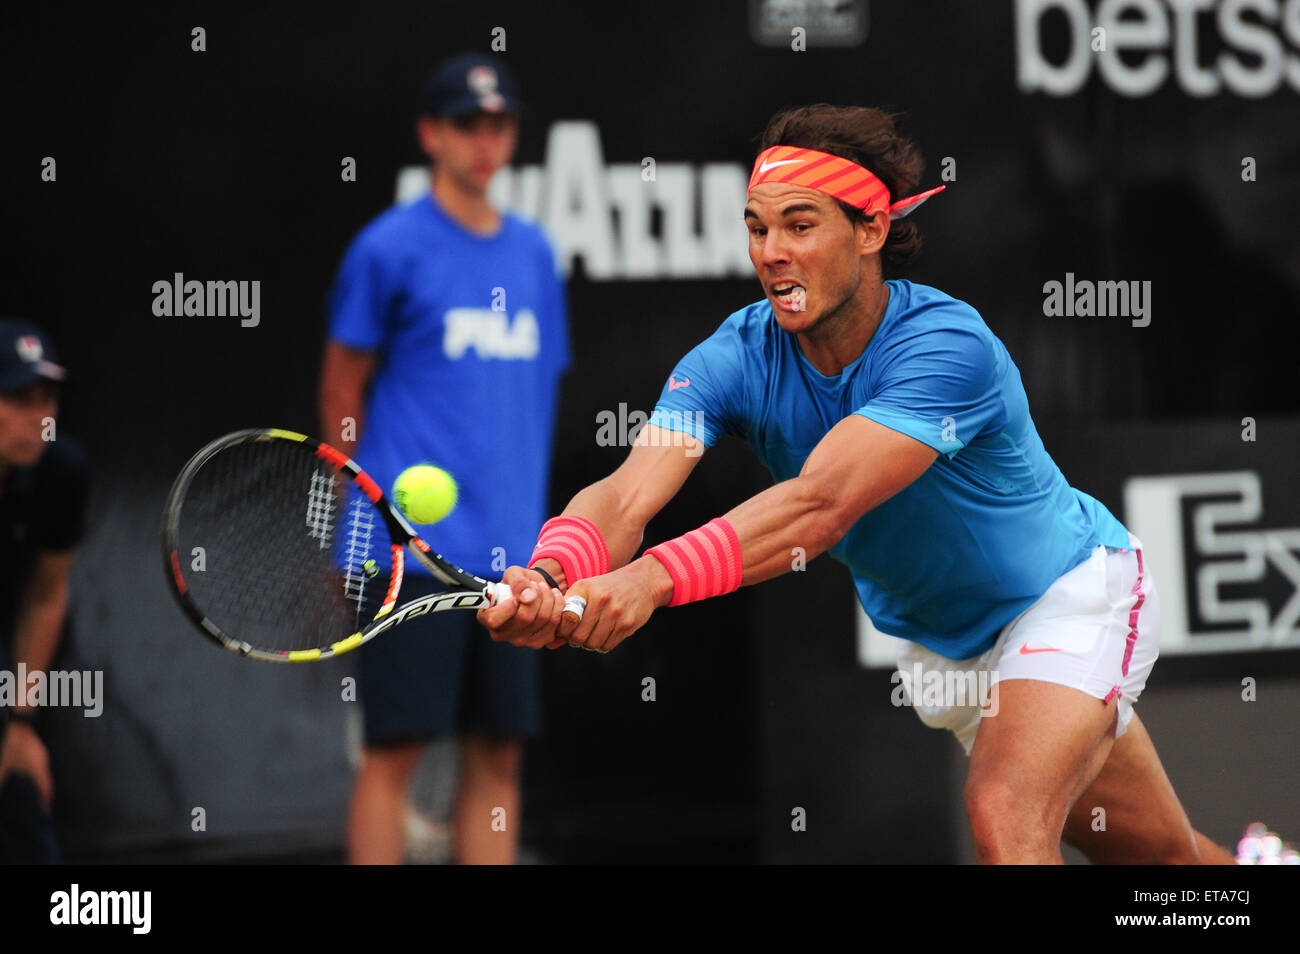 Stuttgart, Germania. 12 Giugno, 2015. Rafael Nadal raggiunge per la palla per durante il trimestre finale della Mercedes Cup. Foto: Miroslav Dakov/ Alamy Live News Foto Stock